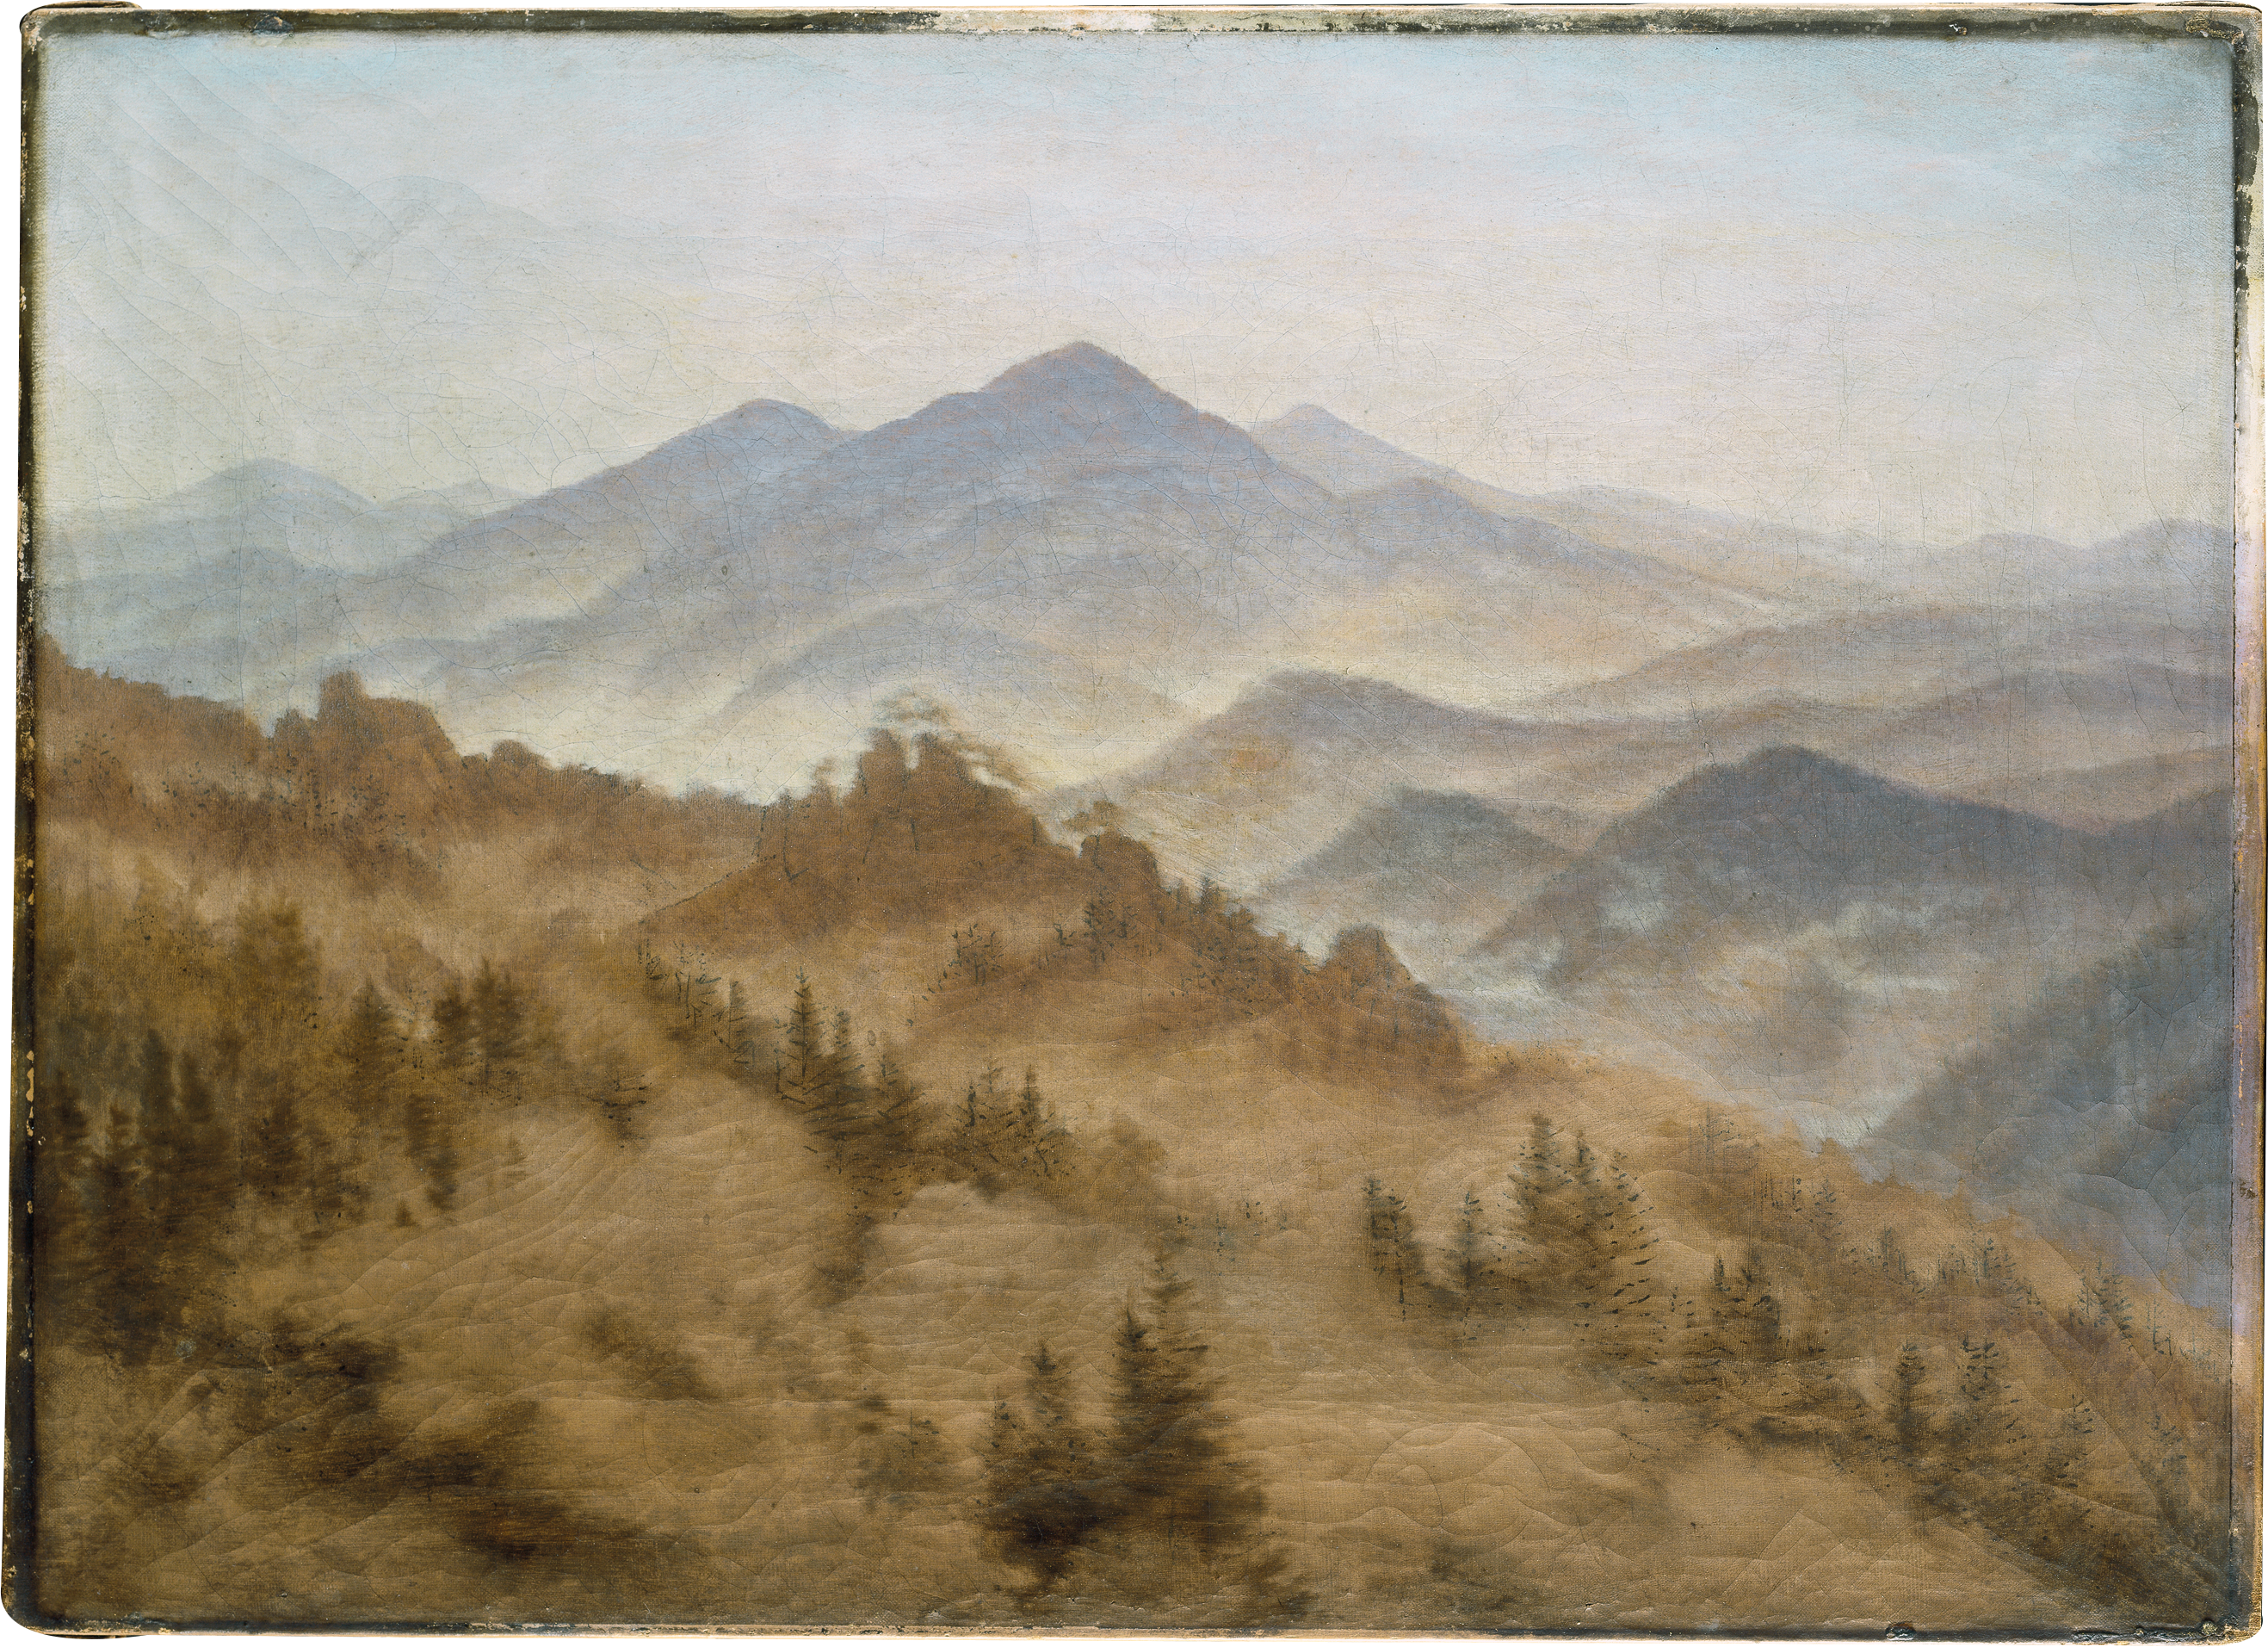 جبال بين الضباب المتصاعد by Caspar David Friedrich - نحو 1835 م - 34.9 × 48.5 س 